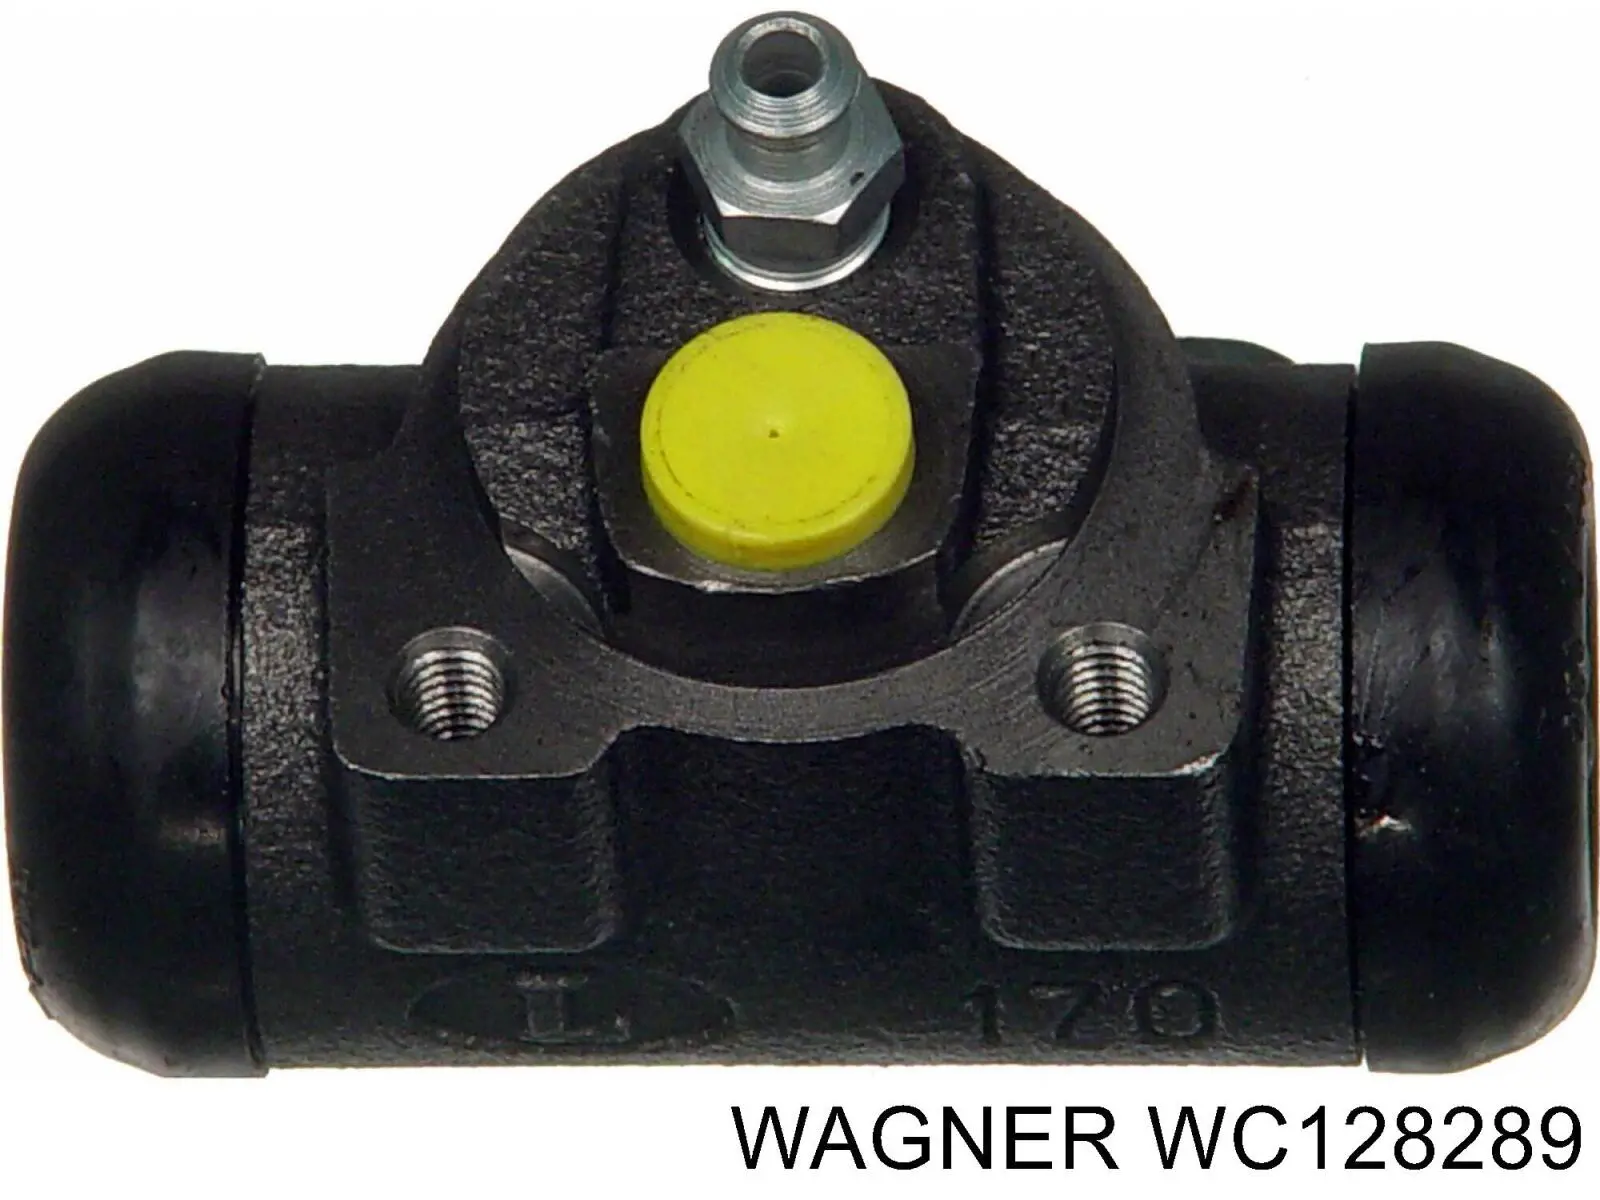 WC128289 Wagner цилиндр тормозной колесный рабочий задний